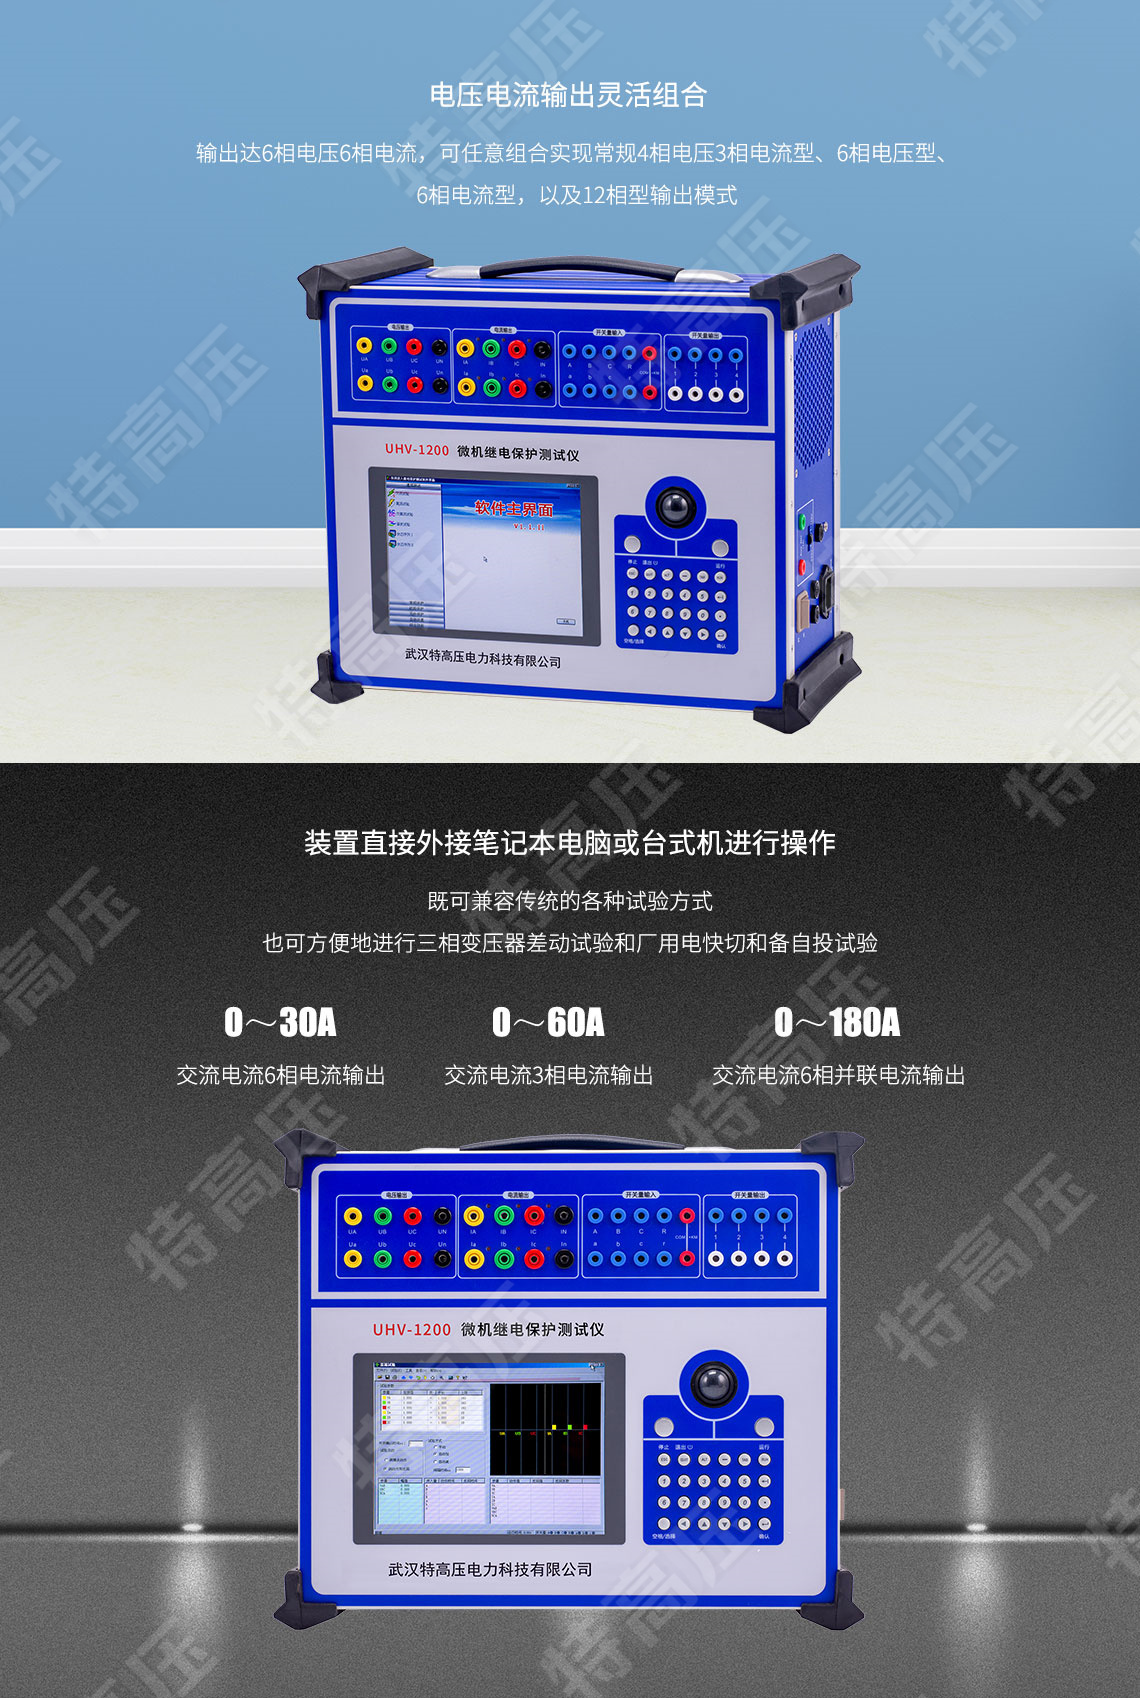 HT-1200 微机继电保护测试仪6U+6I(图2)